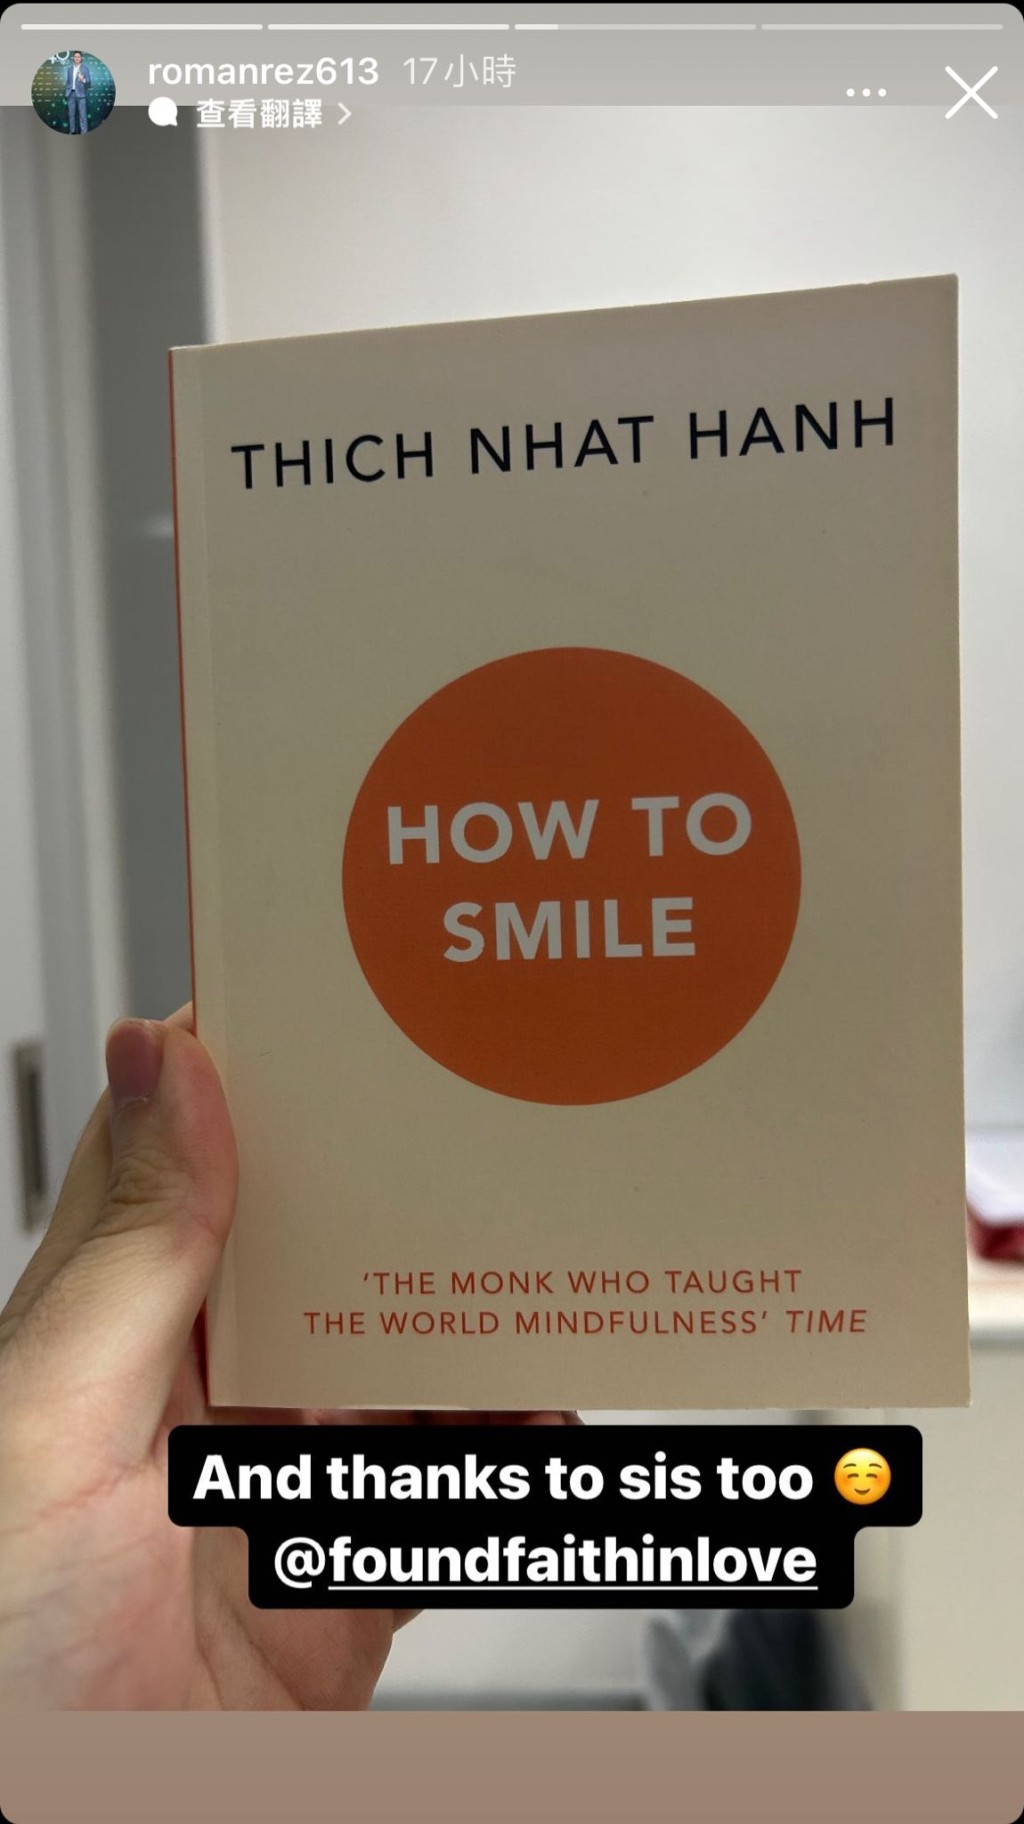 當中可見趙式芝推薦的是一行禪師（Thich Nhat Hanh）的作品《How to Smile》，對同父異母的細佬趙式正盡顯關懷。